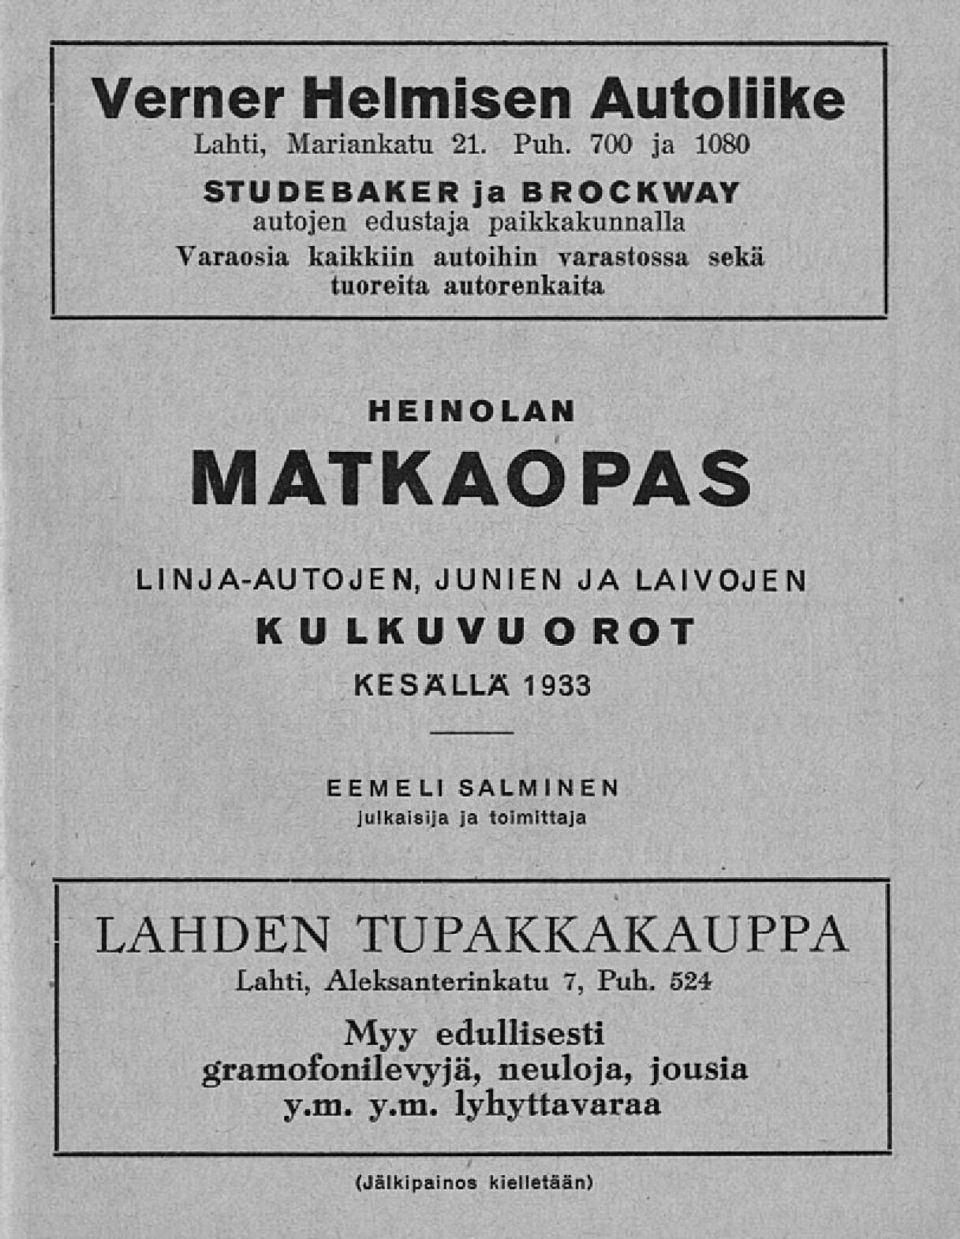 tuoreita autorenkaita HEINOLAN MATKAOPAS LINJA-AUTOJEN, JUNIEN JA LAIVOJEN KULKUVUO ROT KESÄLLÄ 1933 EEMELI